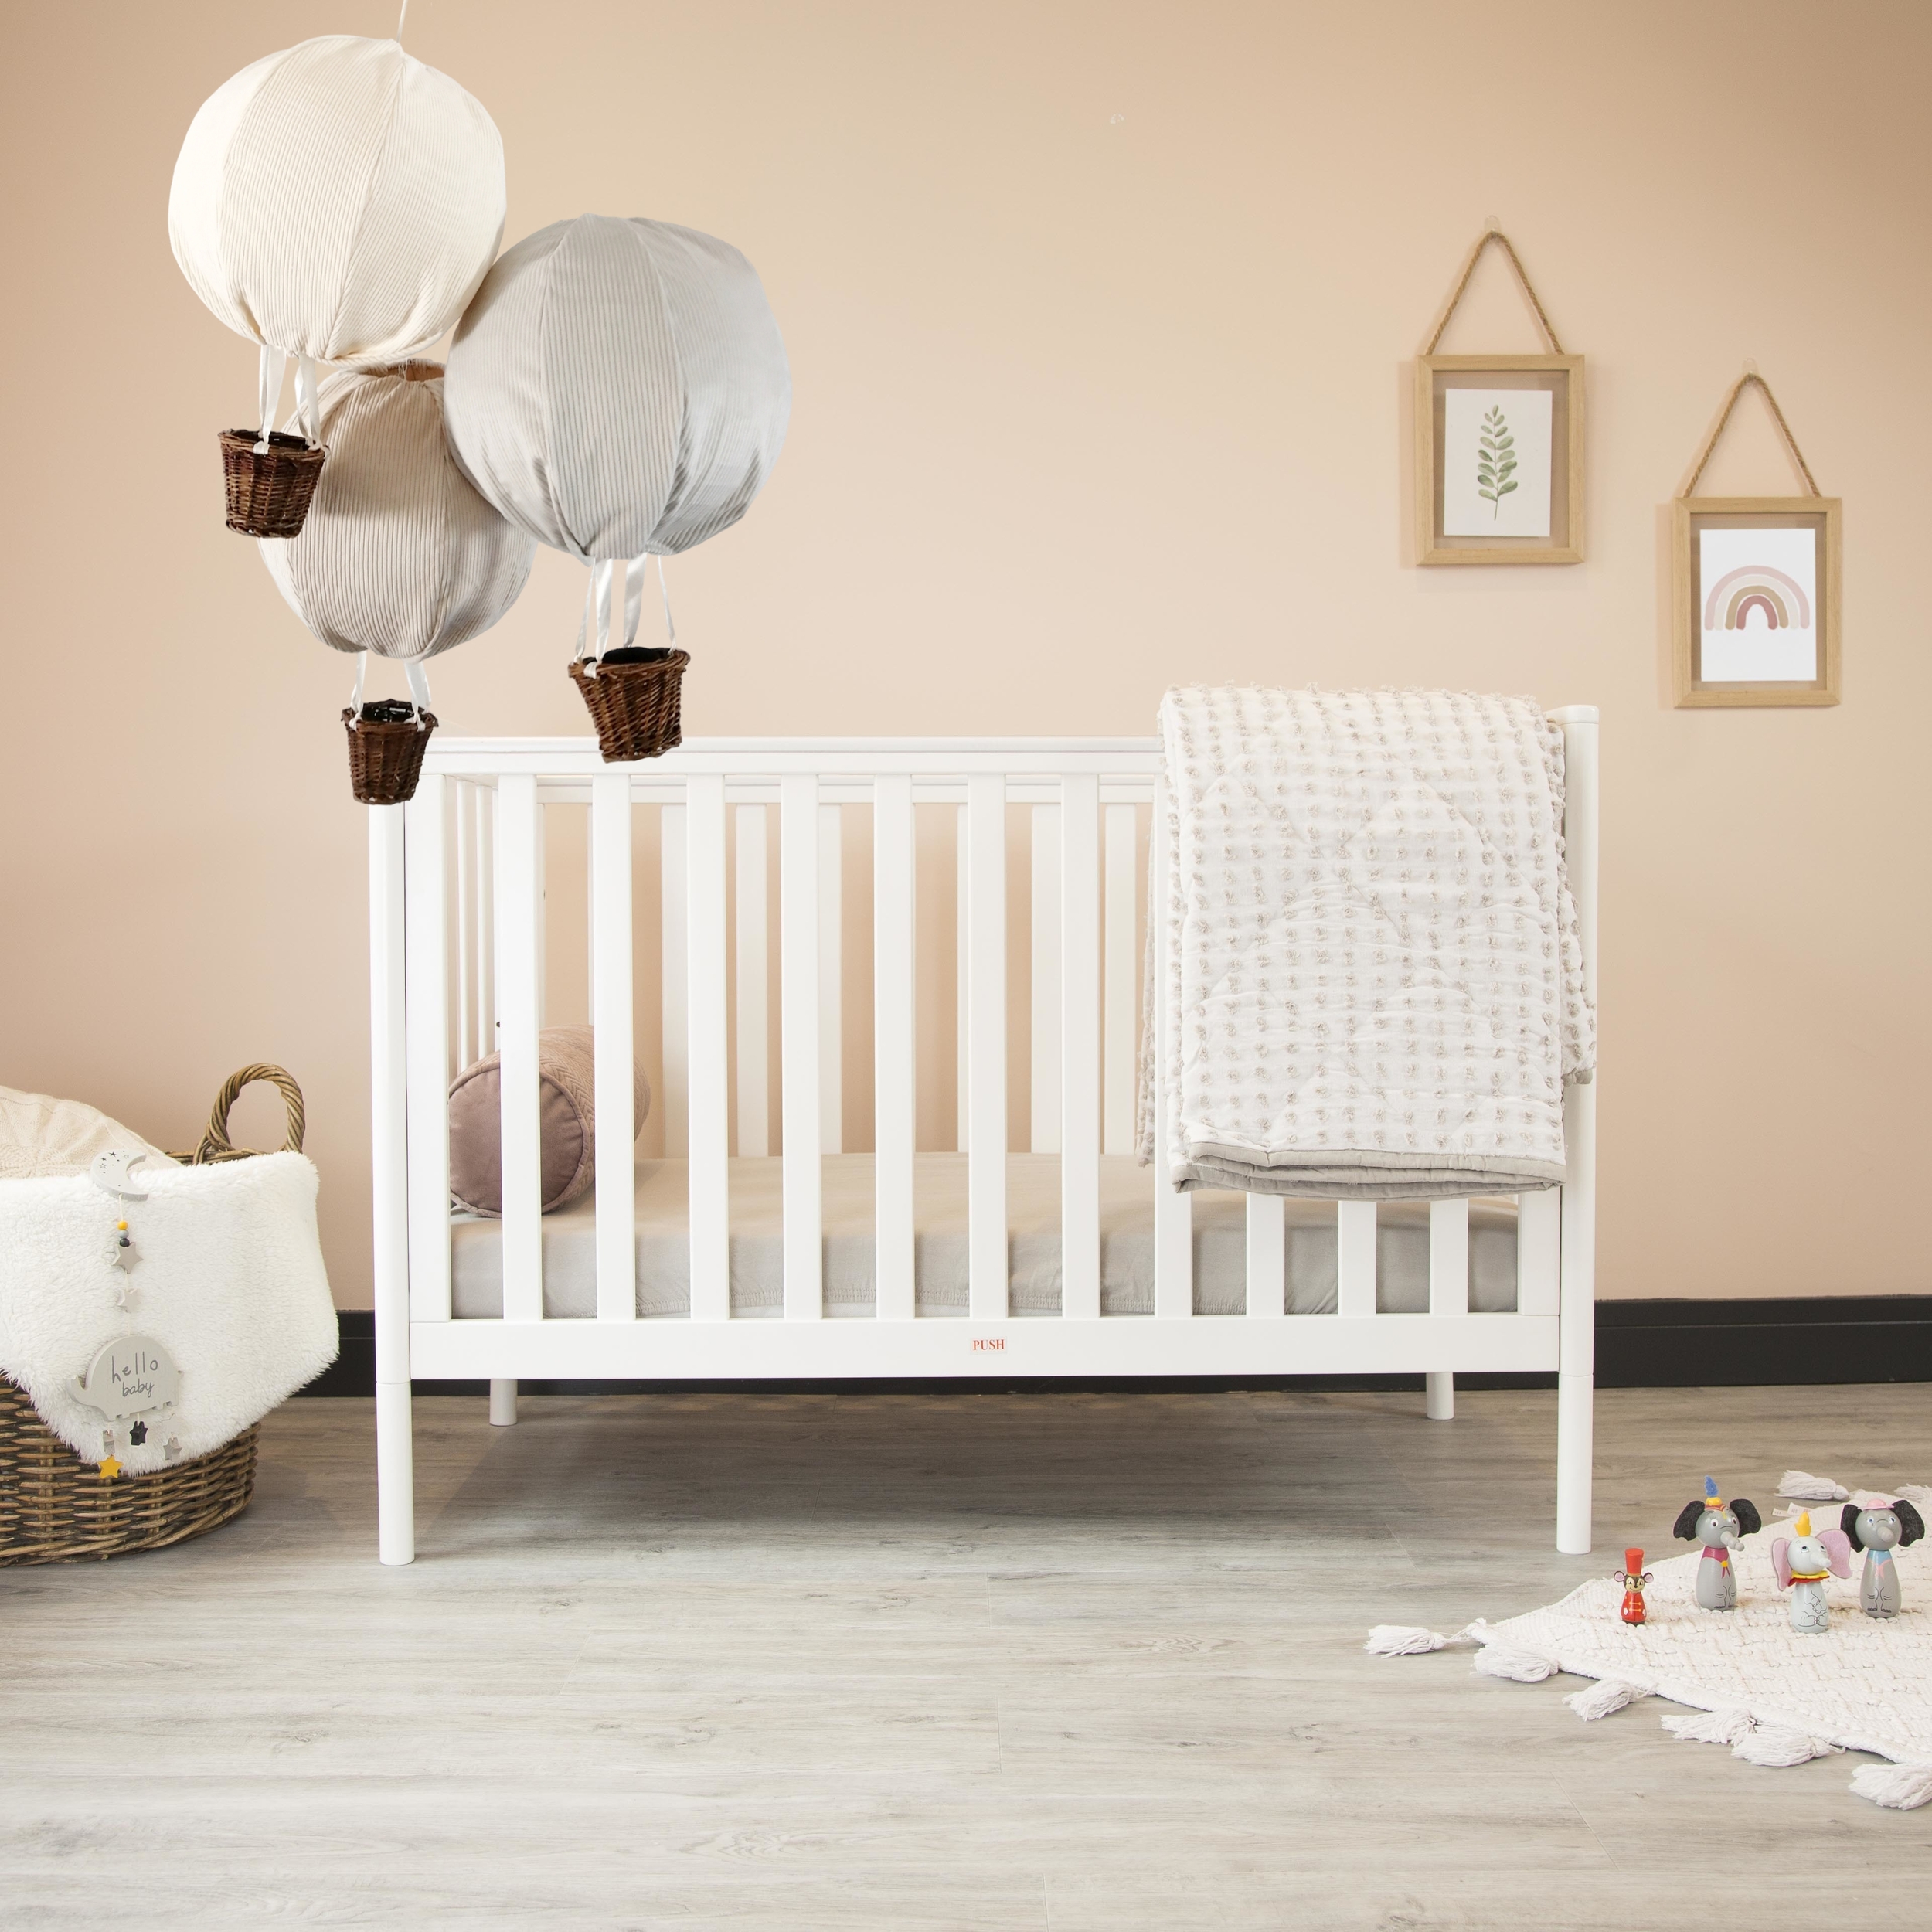 abat-jour-montgolfiere-enfant-bebe-decoration-chambre-lustre-lampe-luminaire-gris-beige-creme